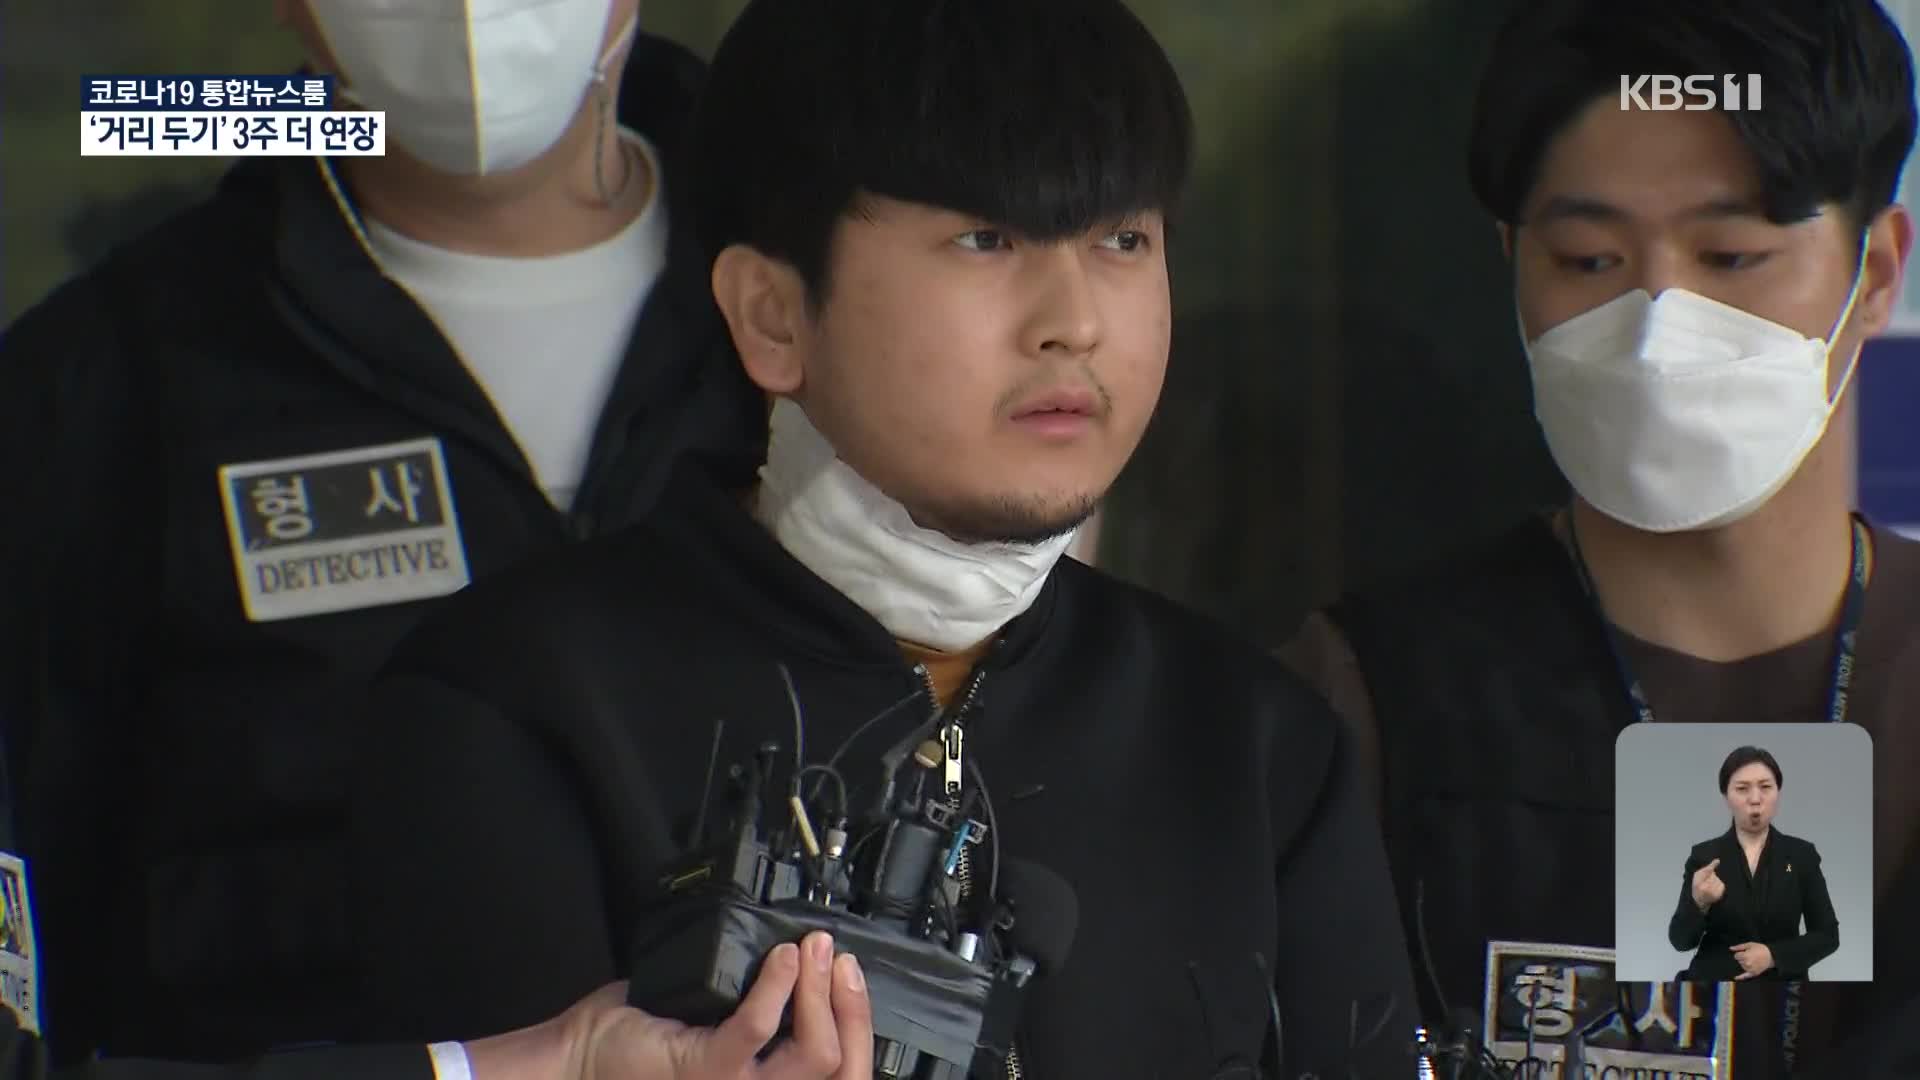 김태현, 일주일 전부터 범행 준비…“연락 안 받아 배신감”